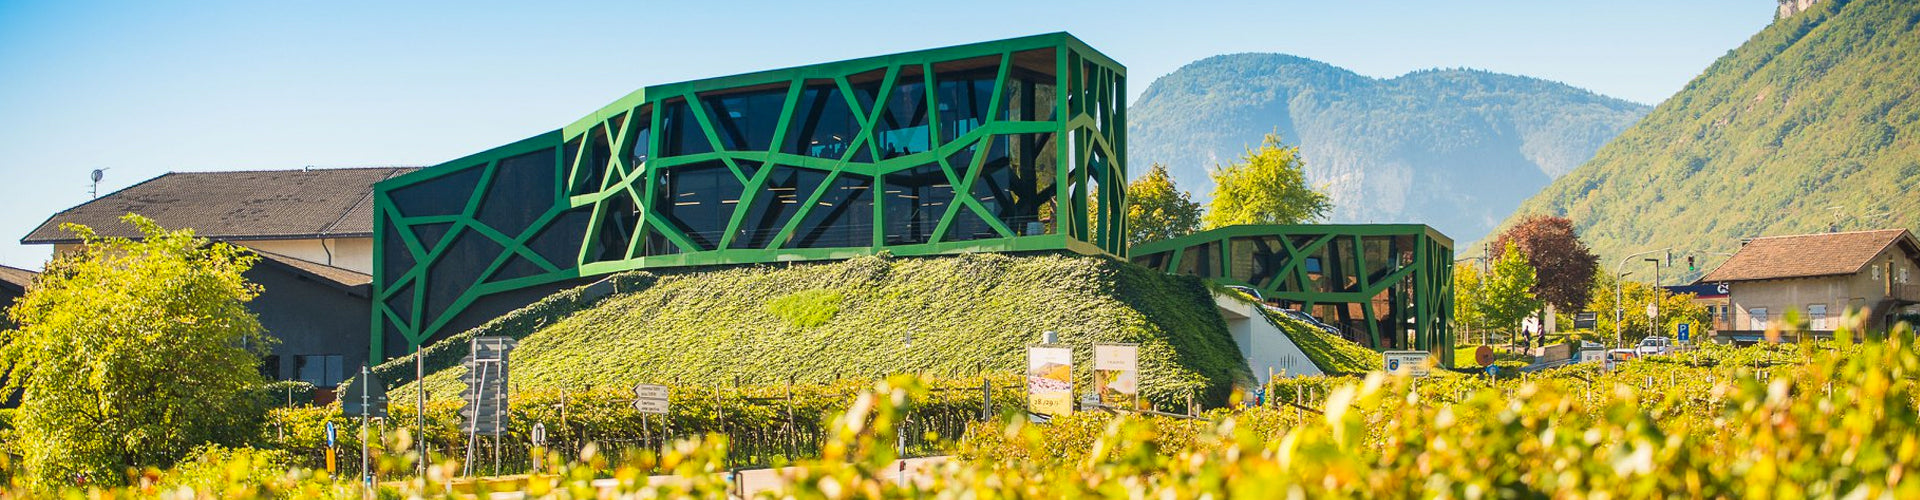 The Tramin Winery in Italy's Alto Adige